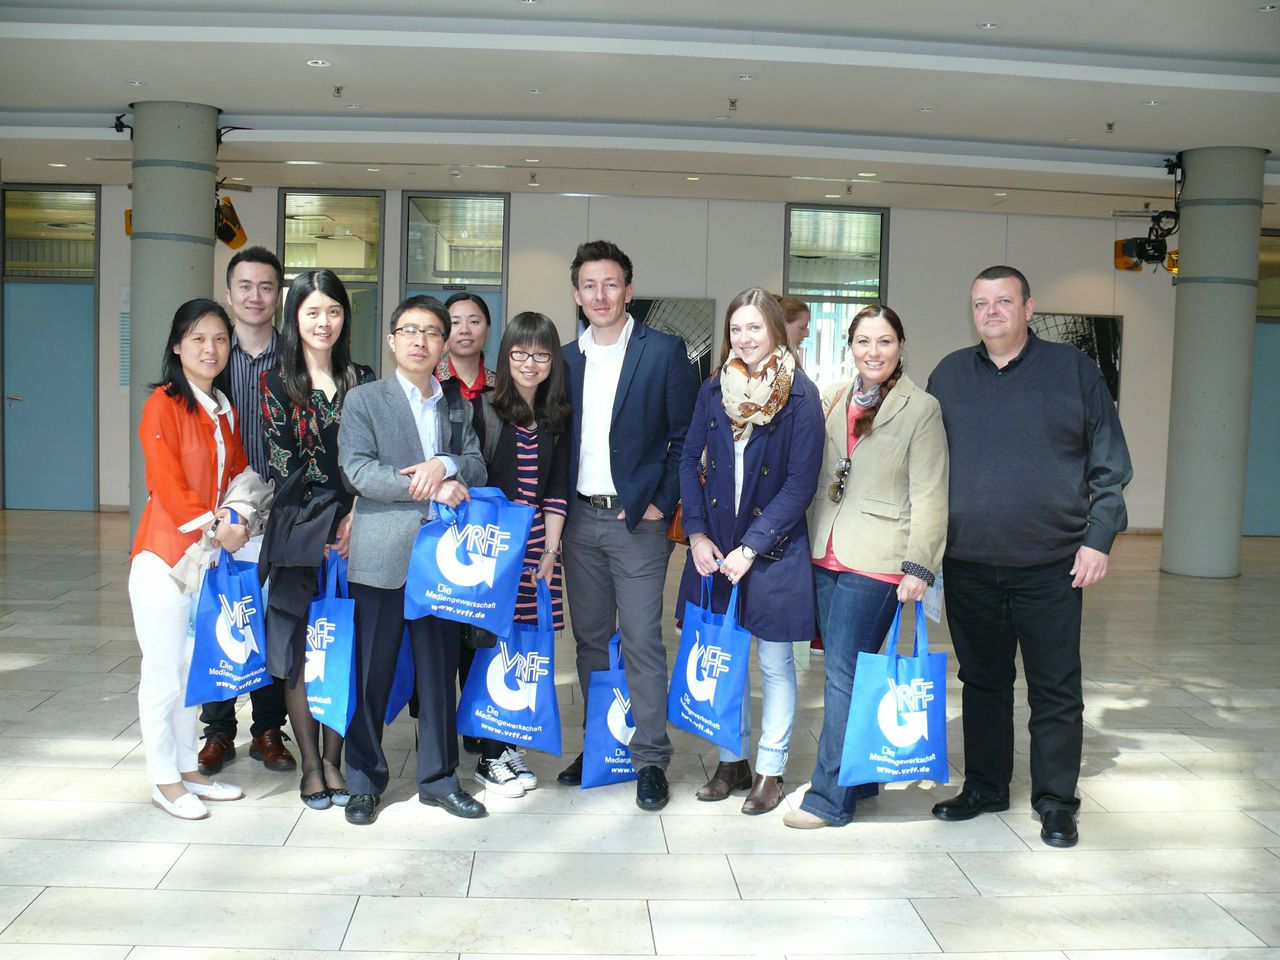 Erlebnisbericht des Besuchs der Bundesjugendbeauftragten beim WDR Düsseldorf mit Akteuren des dbbj-nrw und einer chinesischen Delegation aus Shanghai